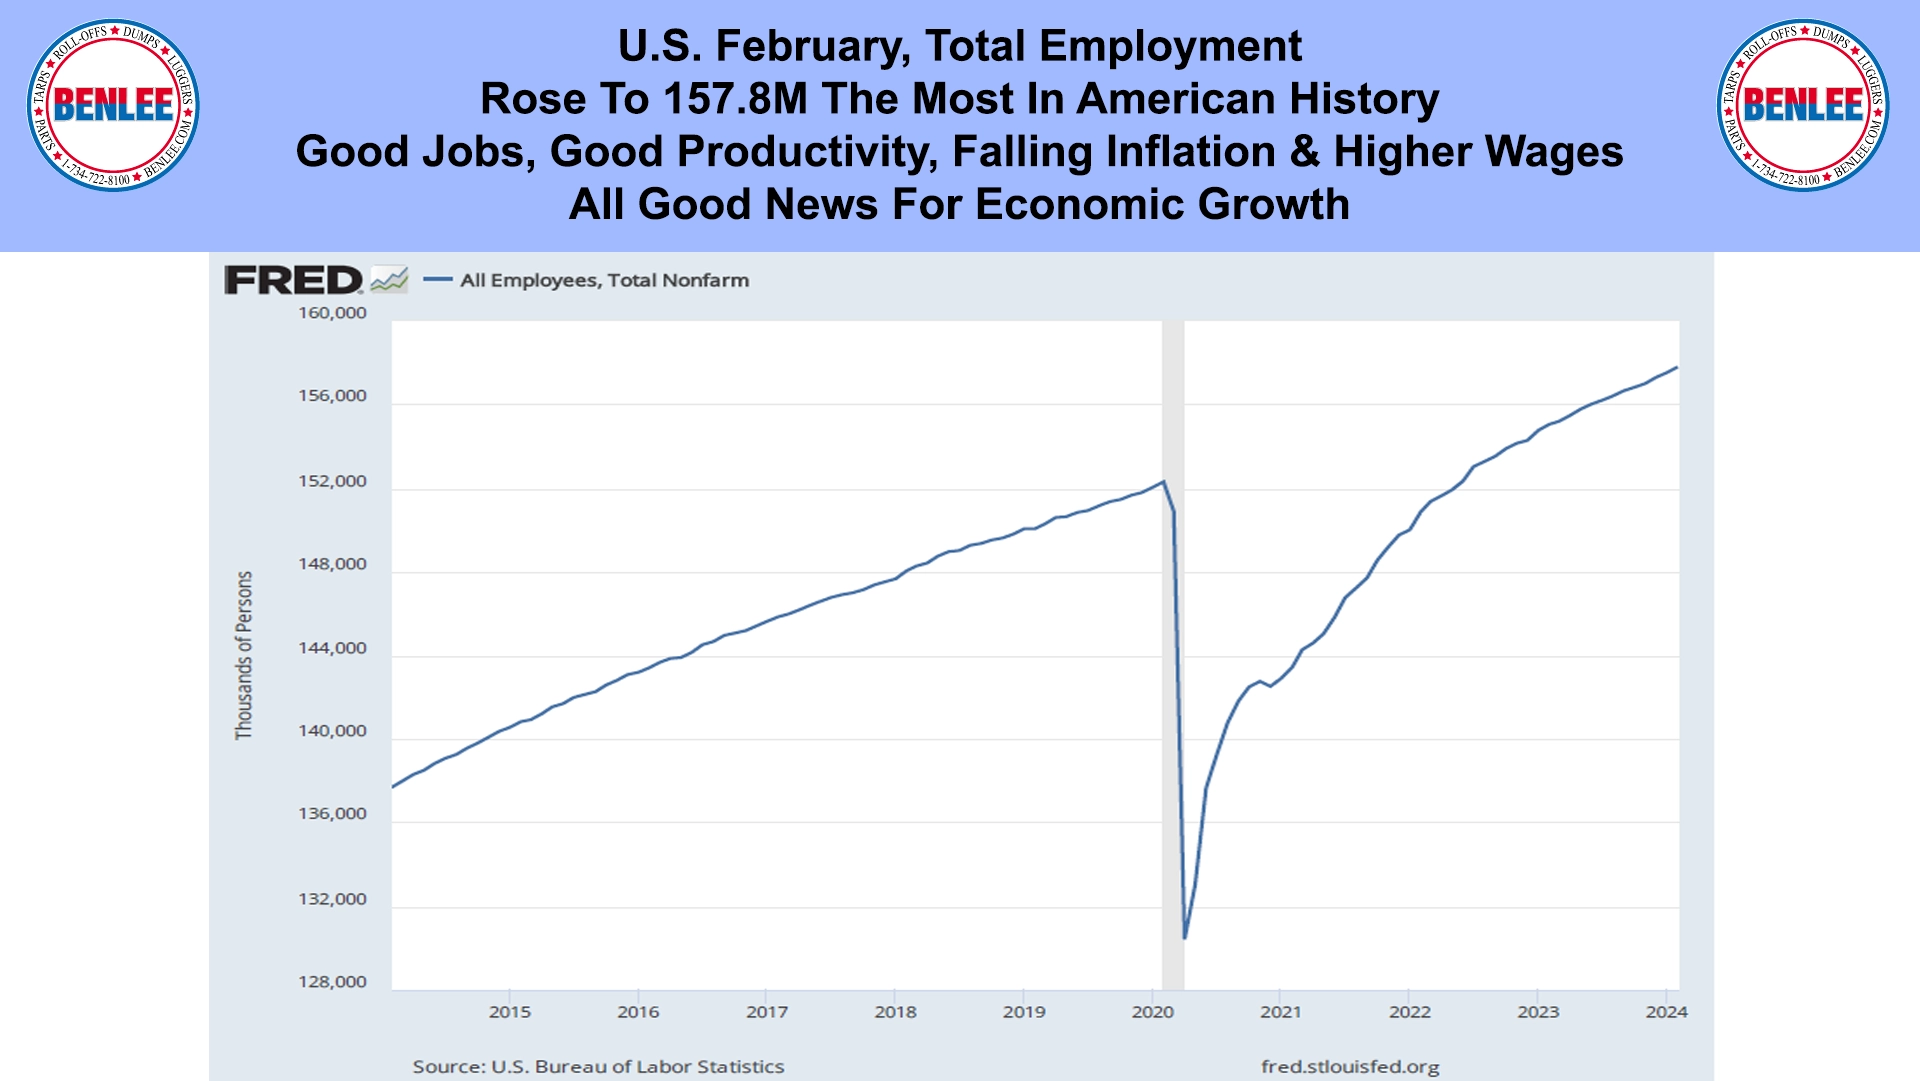 U.S. February, Total Employment